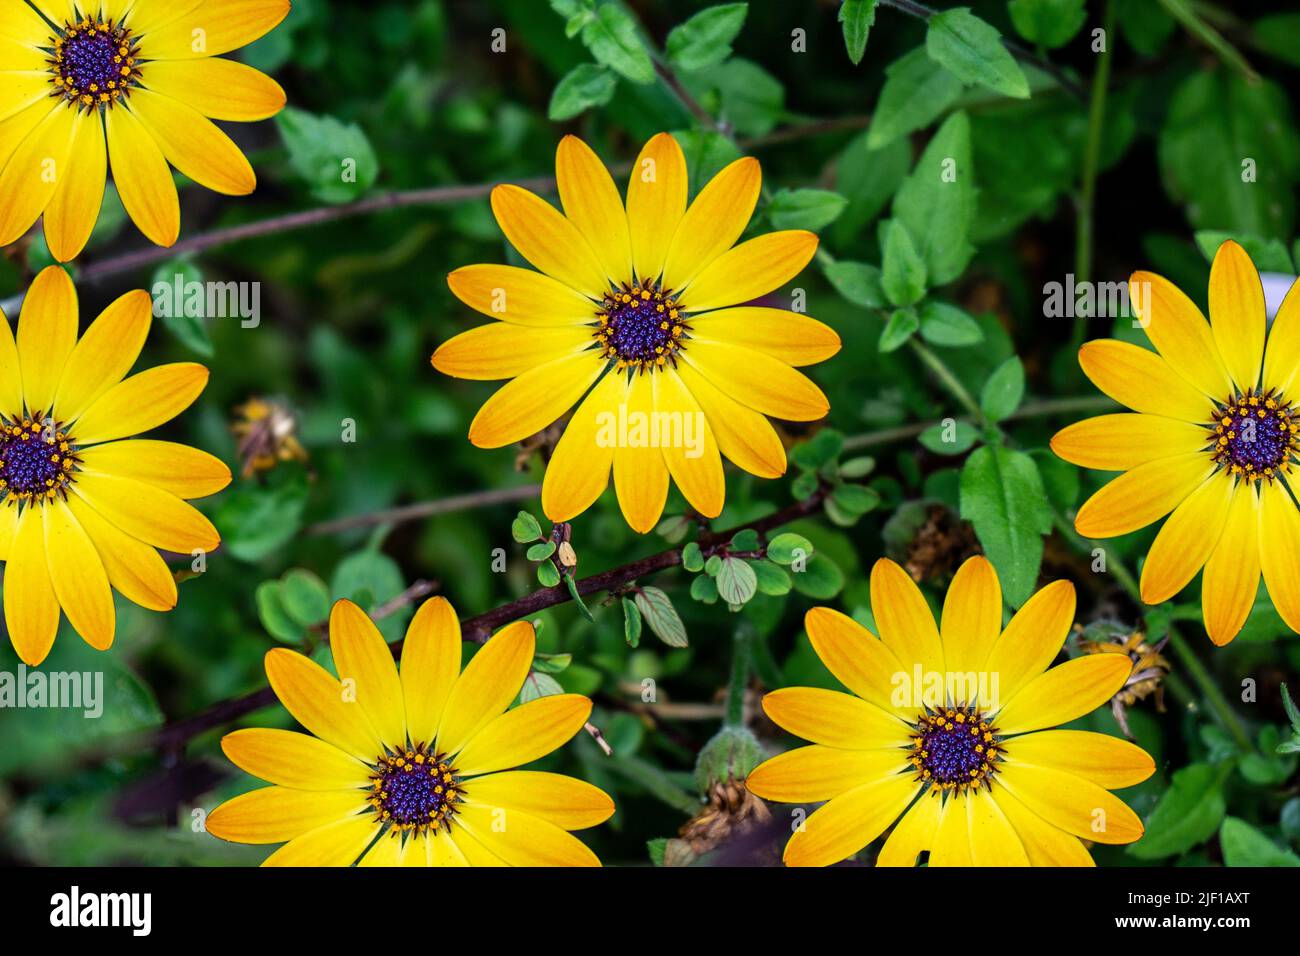 Die Blütenköpfe von Osteospermum Erato, Osteospermum Cape Daisy, Serenity Blue Eyed Beauty, gelbe Blütenblätter mit blau/lila Zentrum ‘Augen’. Stockfoto